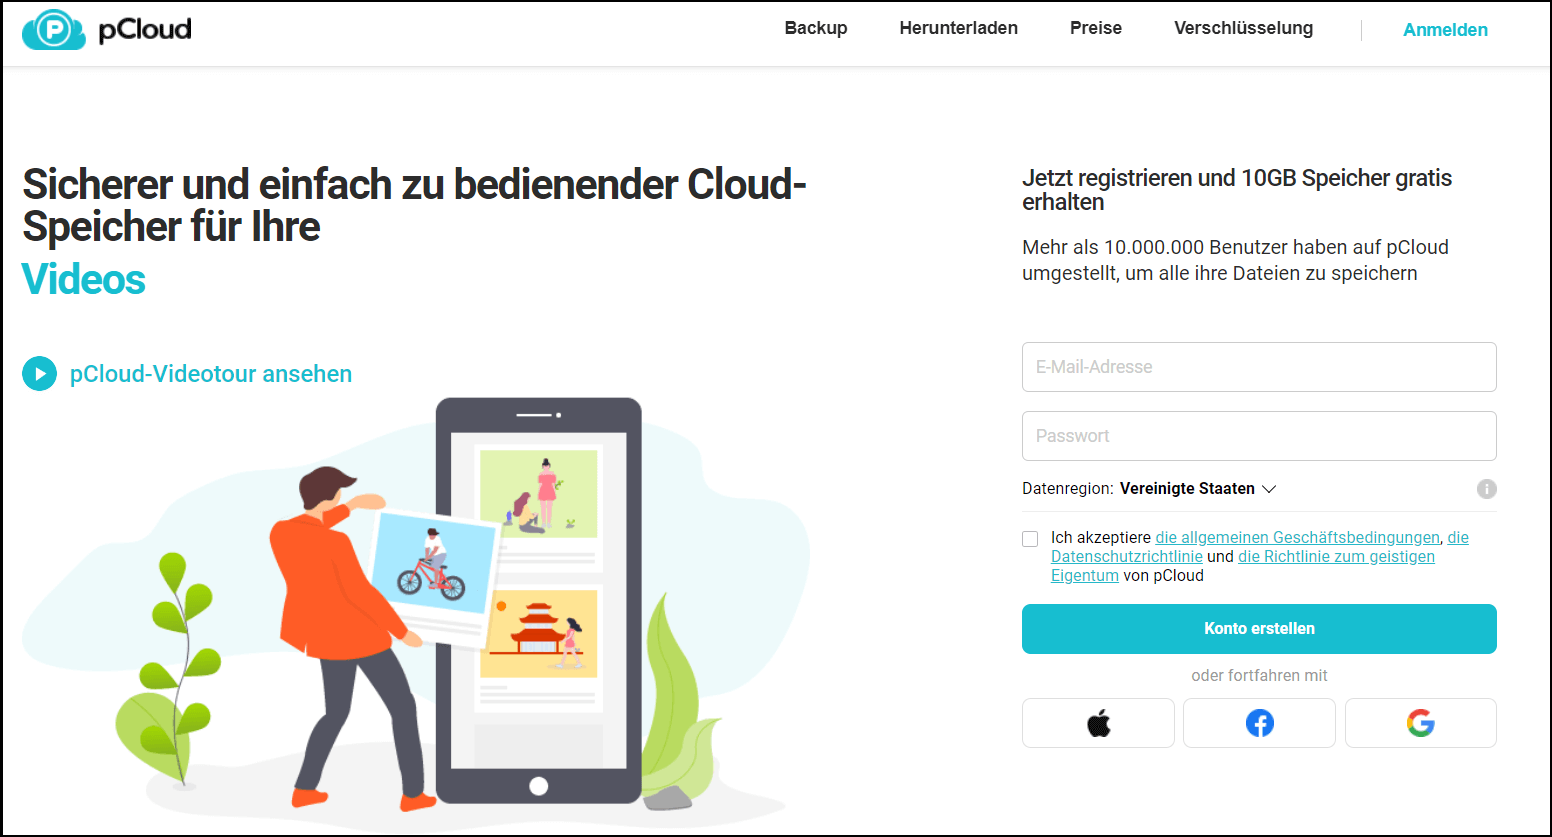 Die Website des Schweizer Cloudspeicher-Anbieters pCloud